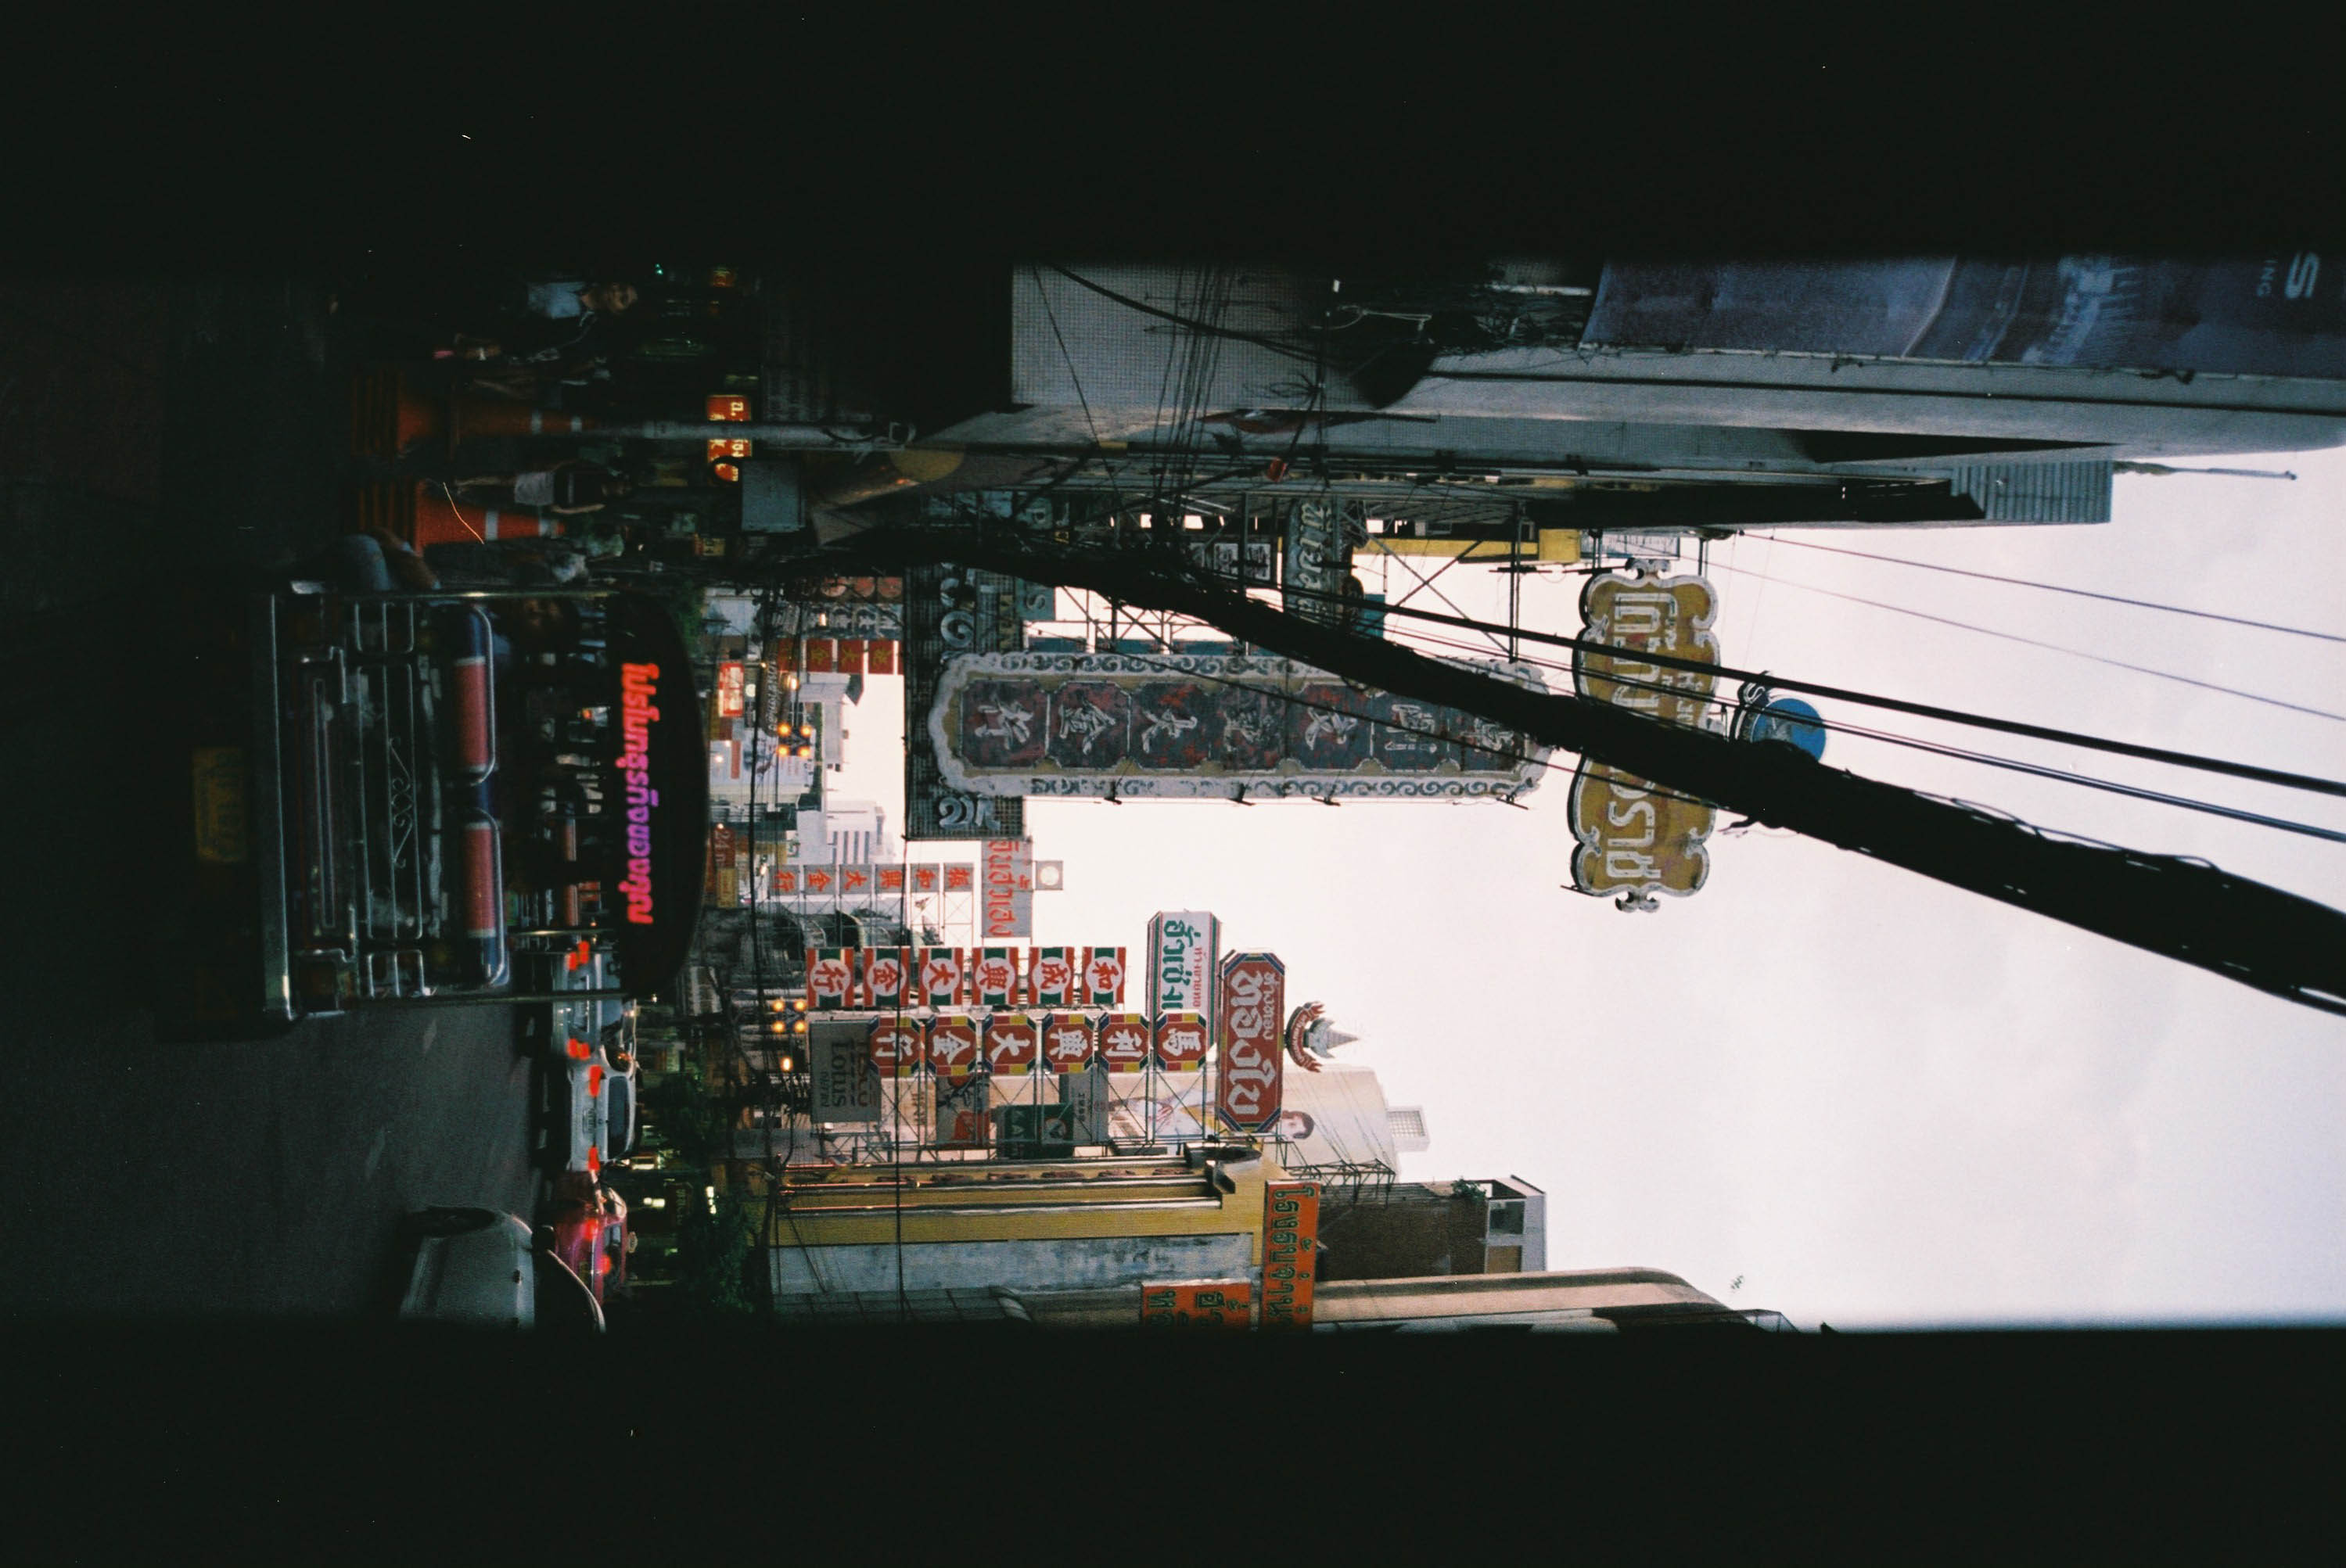 รีวิวรูปถ่ายจากกล้อง Minolta a303si และฟิล์ม fuji C200 ในโหมด Panorama